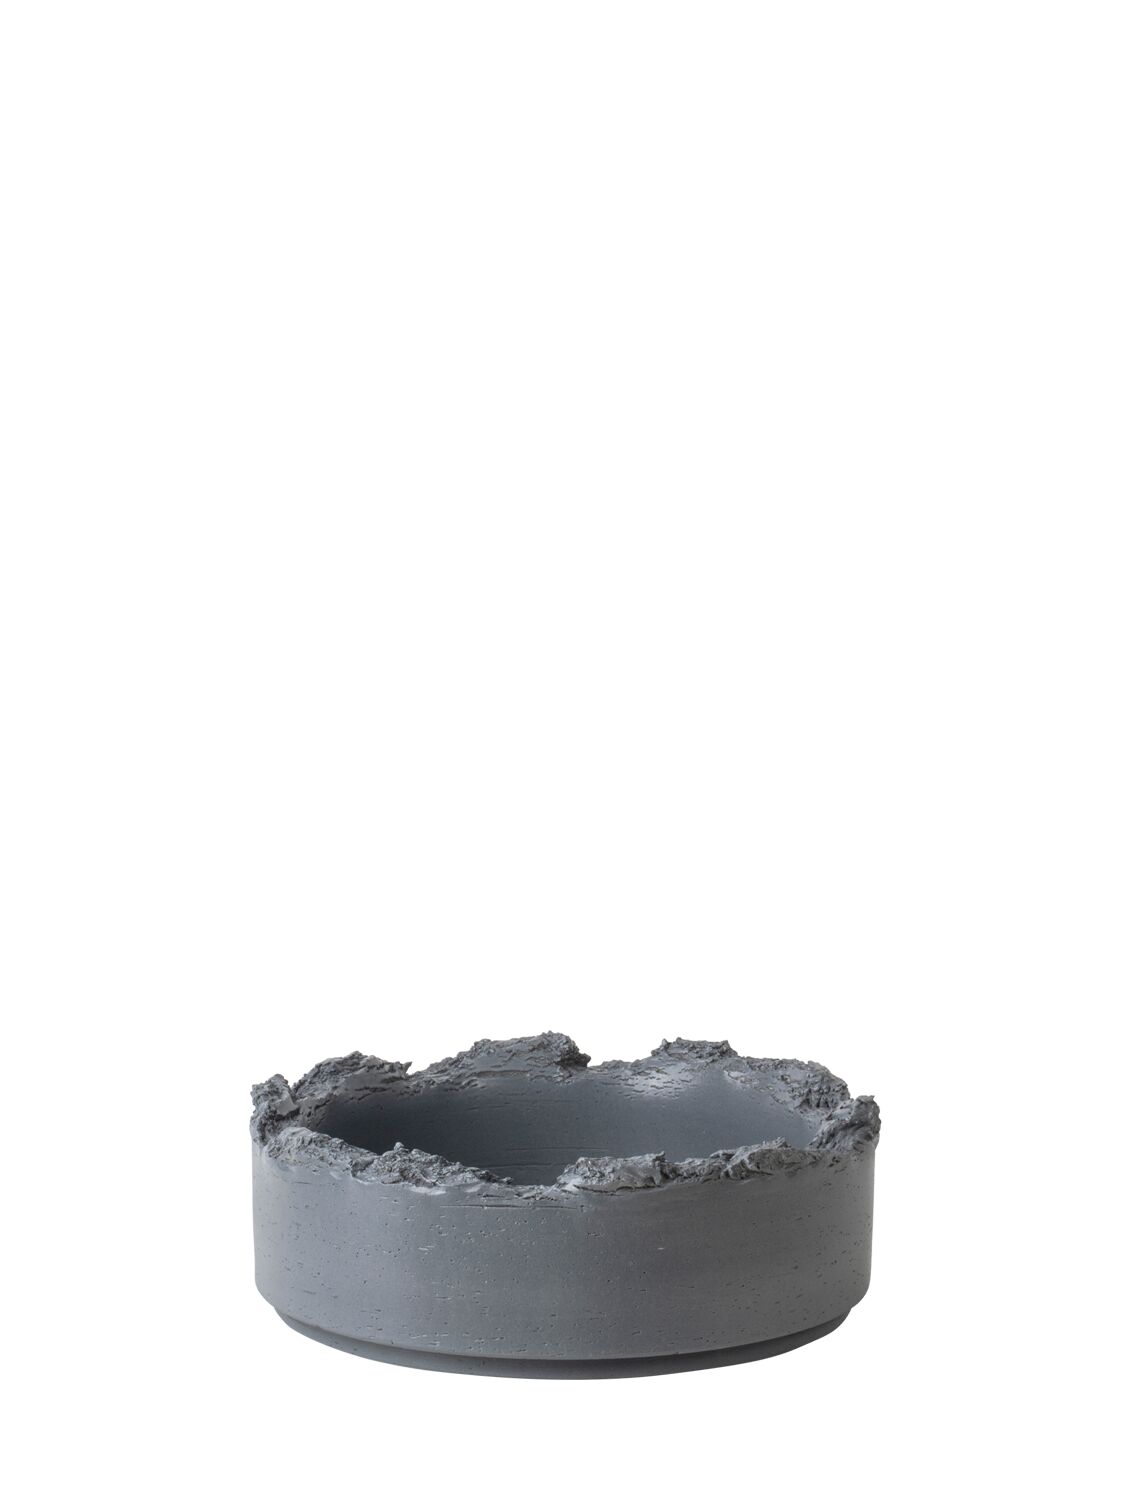 Bitossi Ceramiche Formafantasma Clay Bowl In Gray